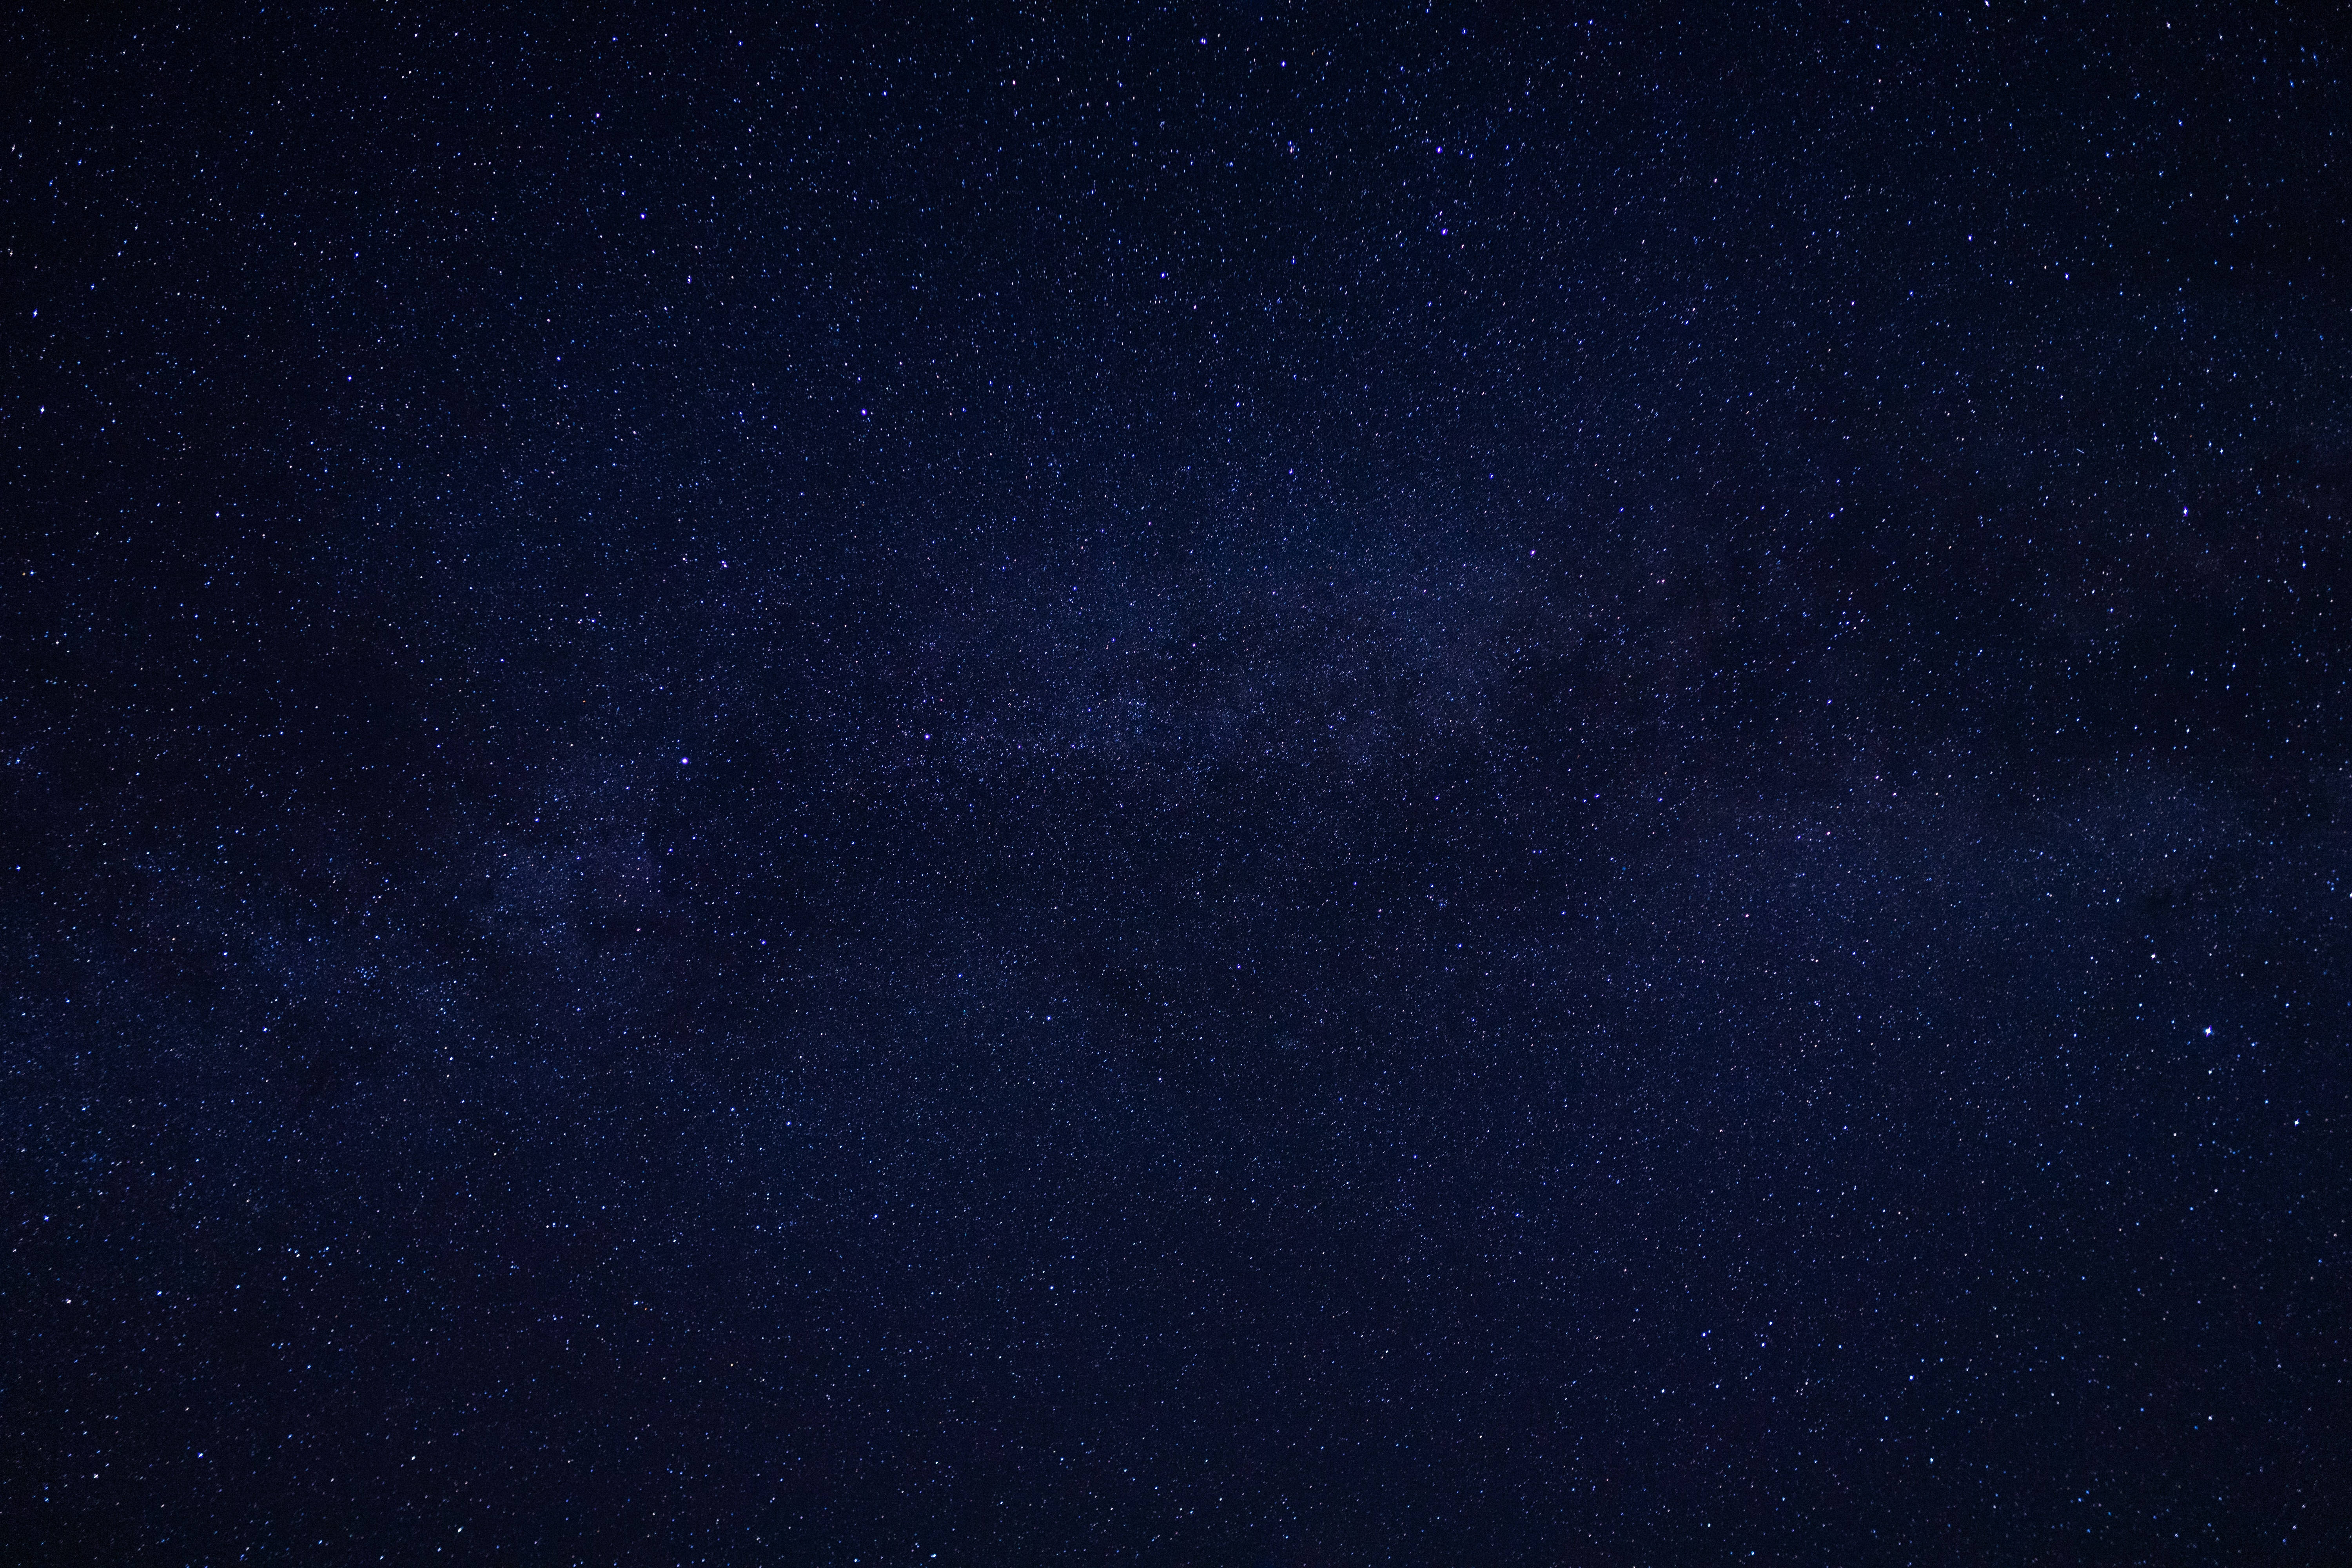 Hãy đắm mình trong không gian rực rỡ và thần thái của bầu trời đầy sao. Những ngôi sao sáng lấp lánh trên màn hình điện thoại hay máy tính sẽ khiến bạn cảm thấy như đang du hành khám phá vũ trụ.